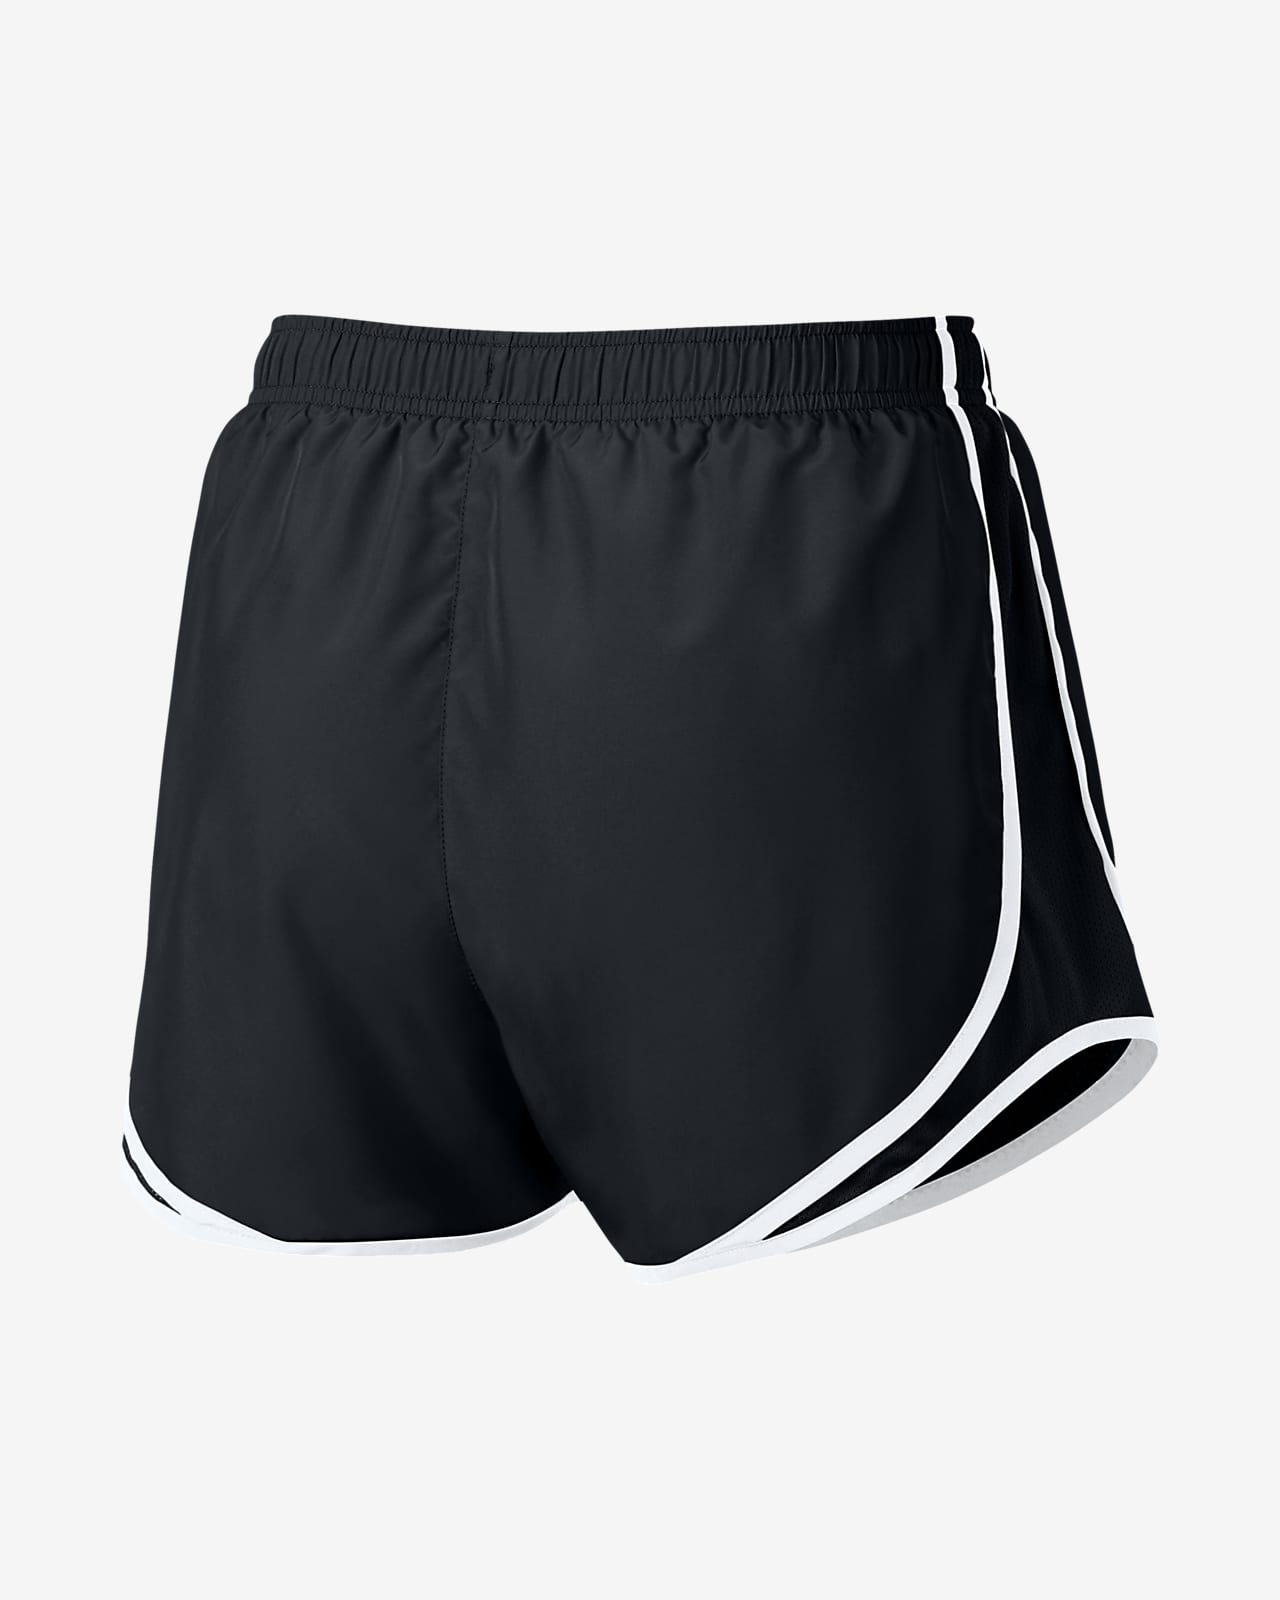 nike running shorts